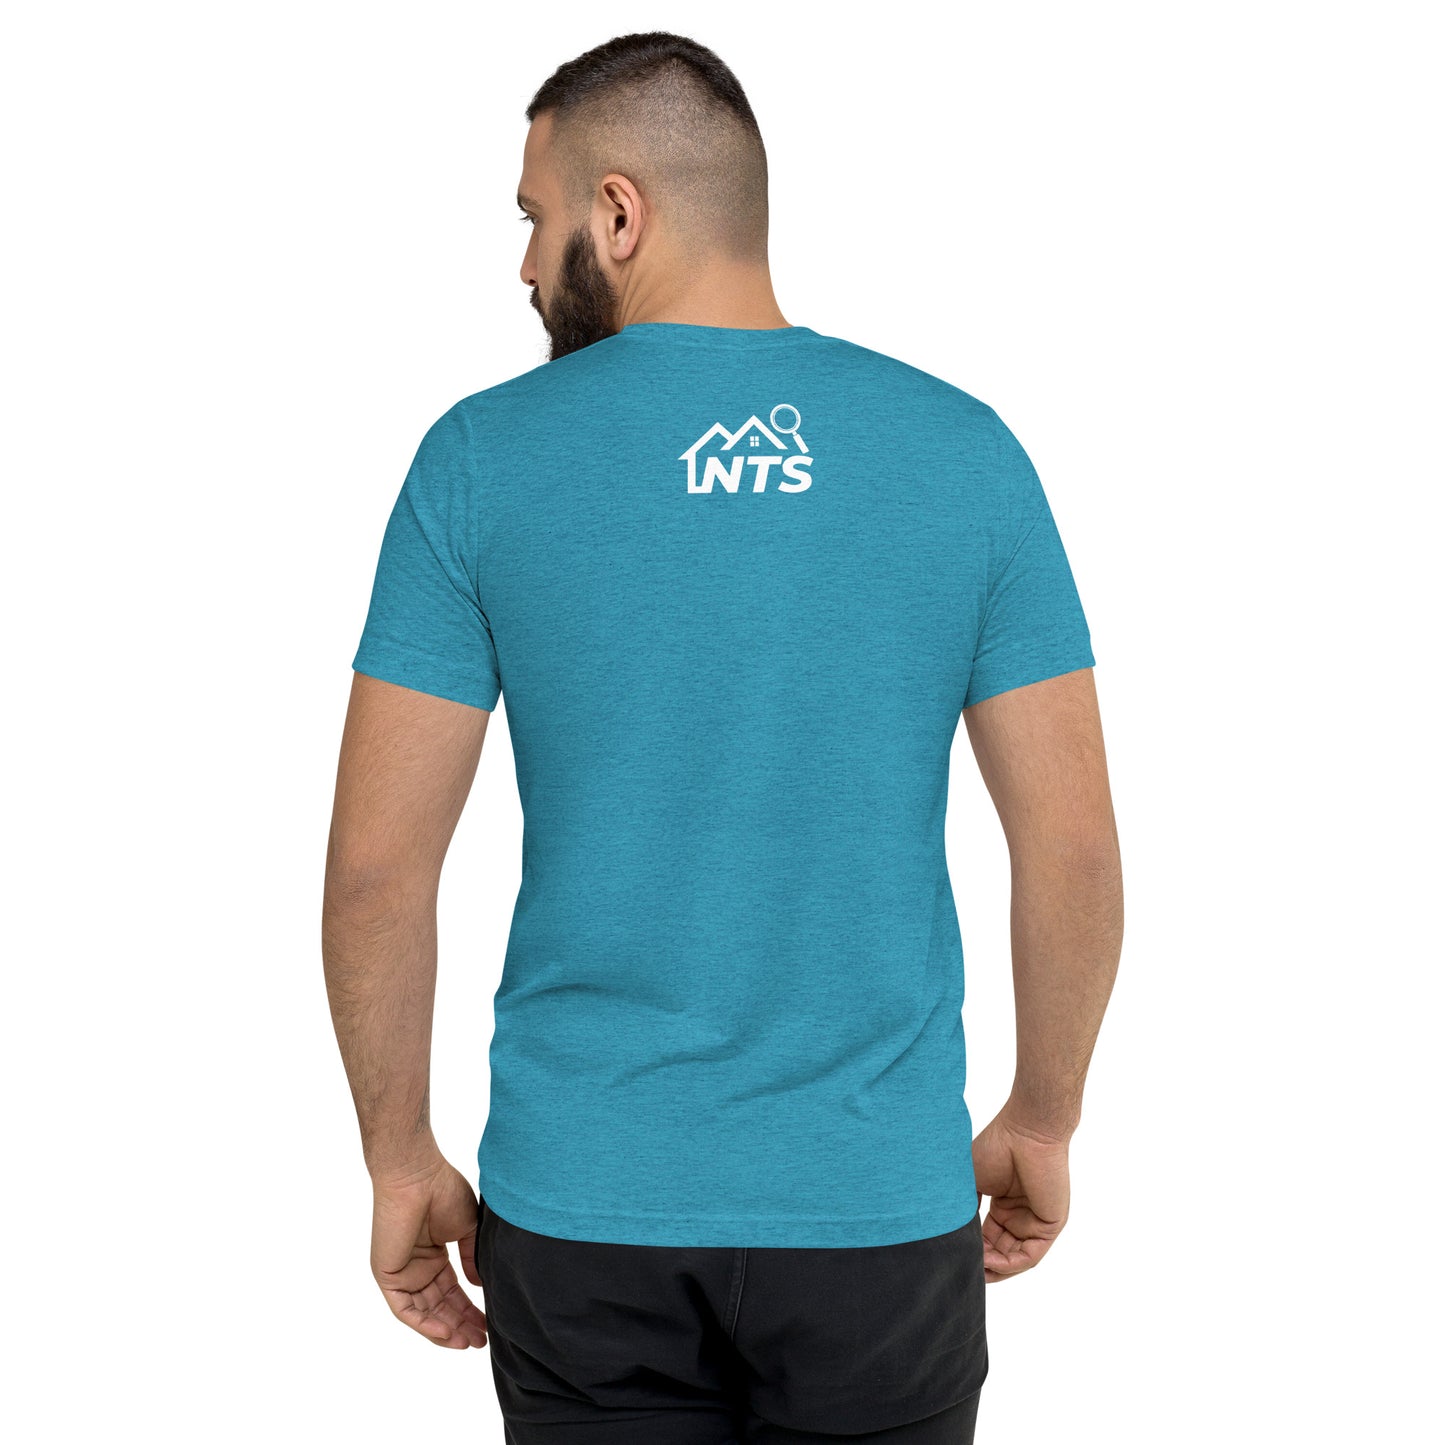 NTS Shingles Tri-Blend Shirt